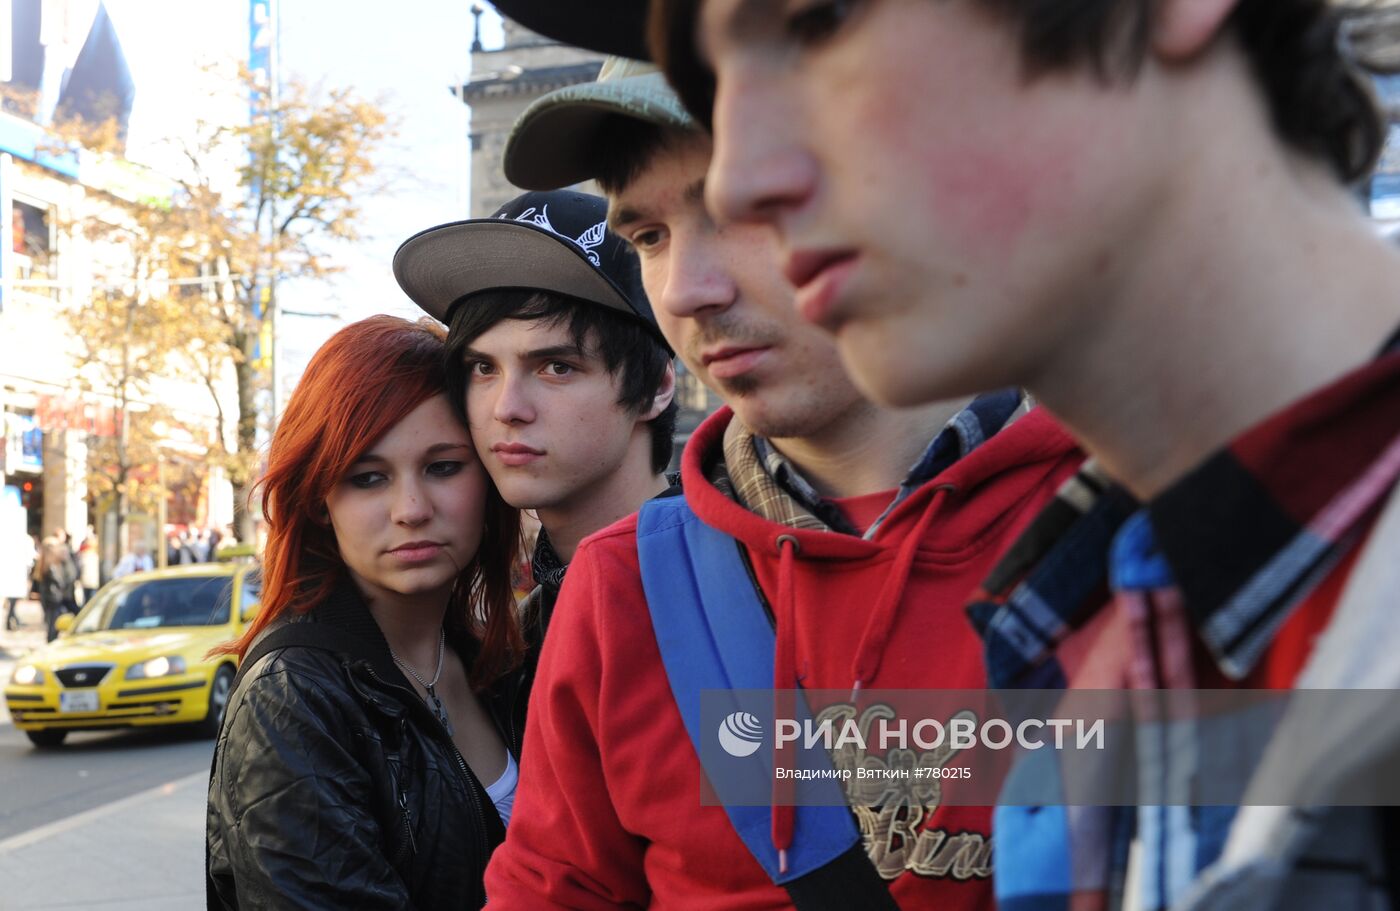 Молодежь в центре города Праги